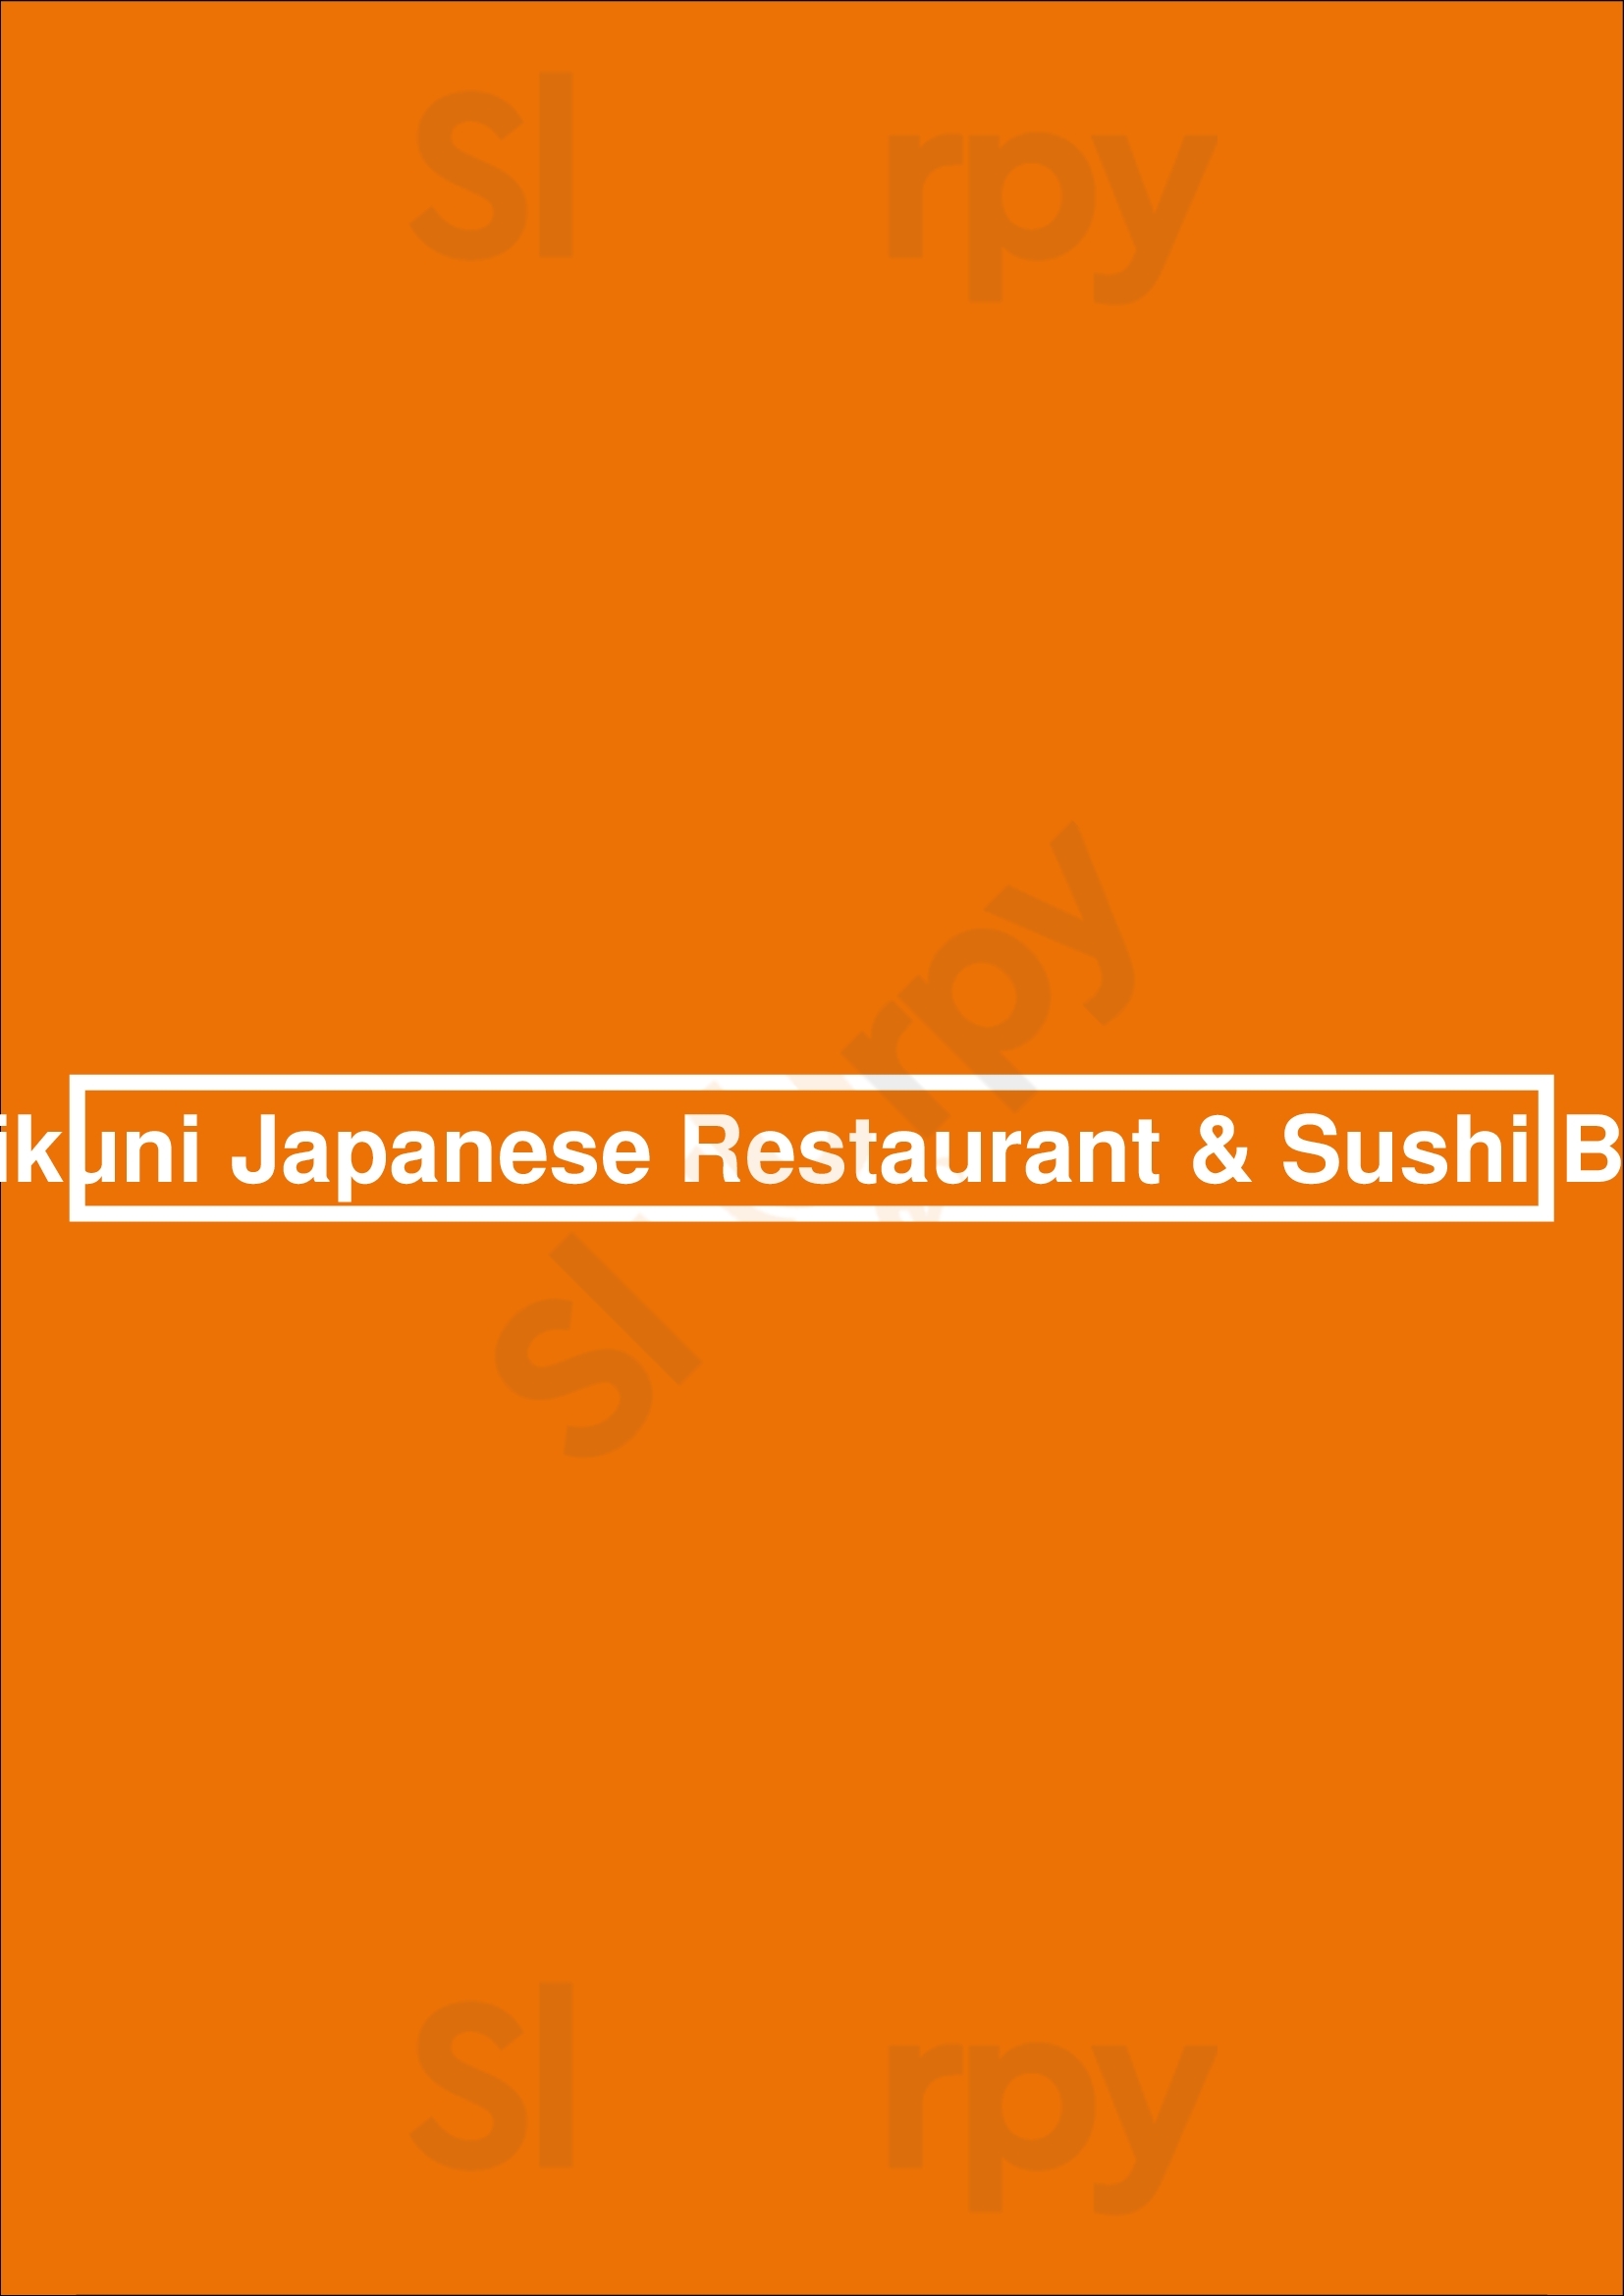 Mikuni Japanese Restaurant & Sushi Bar Sacramento Menu - 1